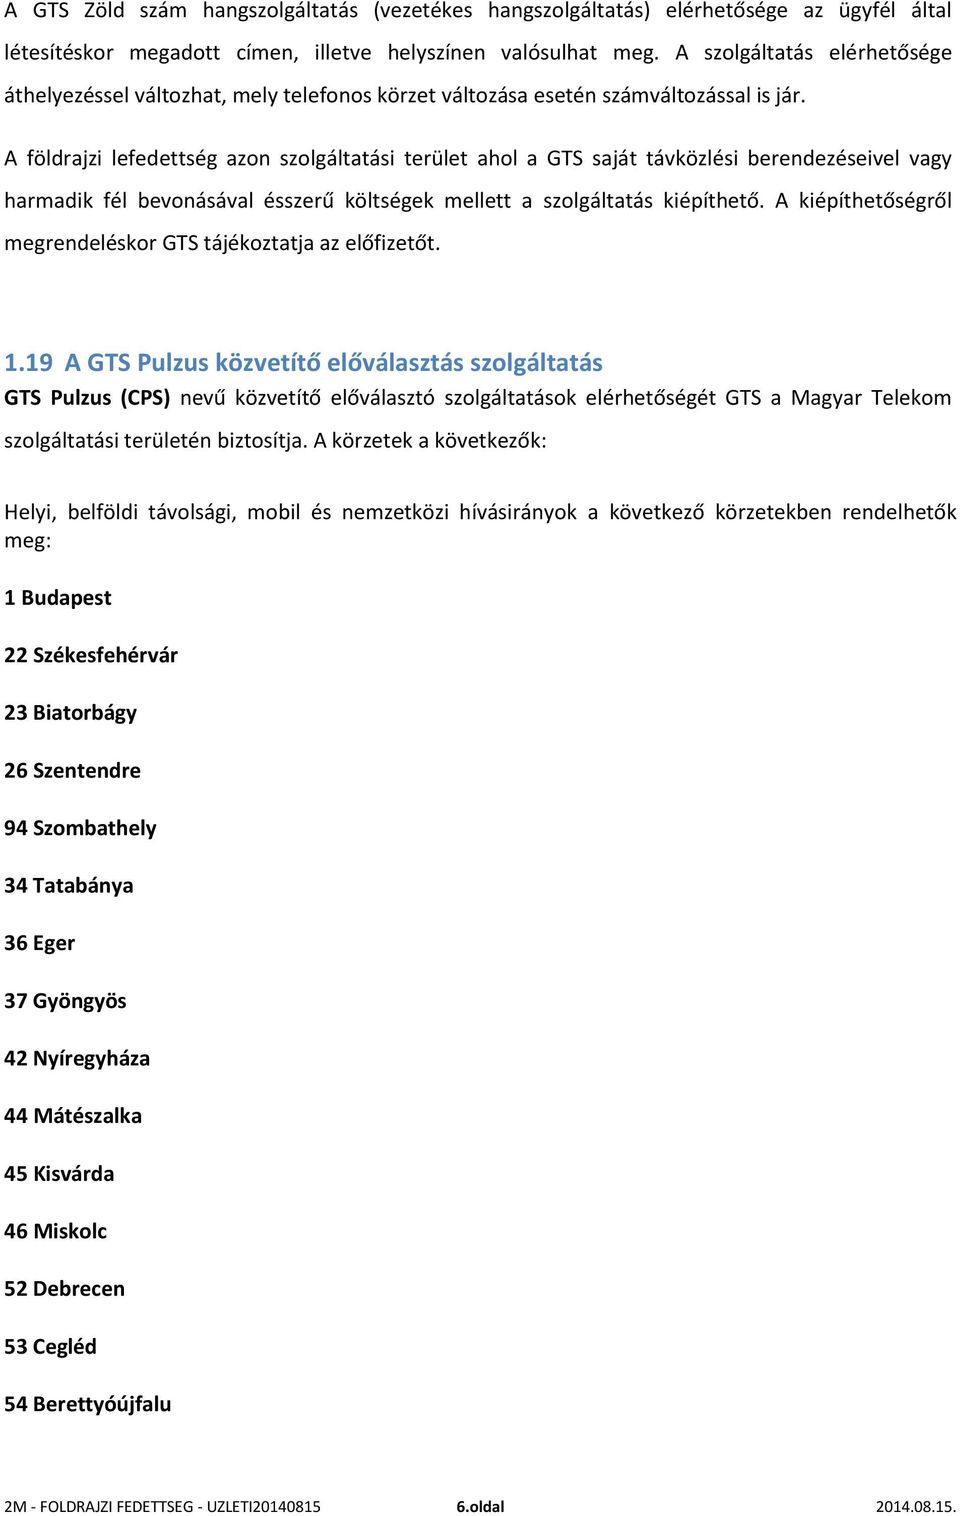 19 A GTS Pulzus közvetítő előválasztás szolgáltatás GTS Pulzus (CPS) nevű közvetítő előválasztó szolgáltatások elérhetőségét GTS a Magyar Telekom szolgáltatási területén biztosítja.